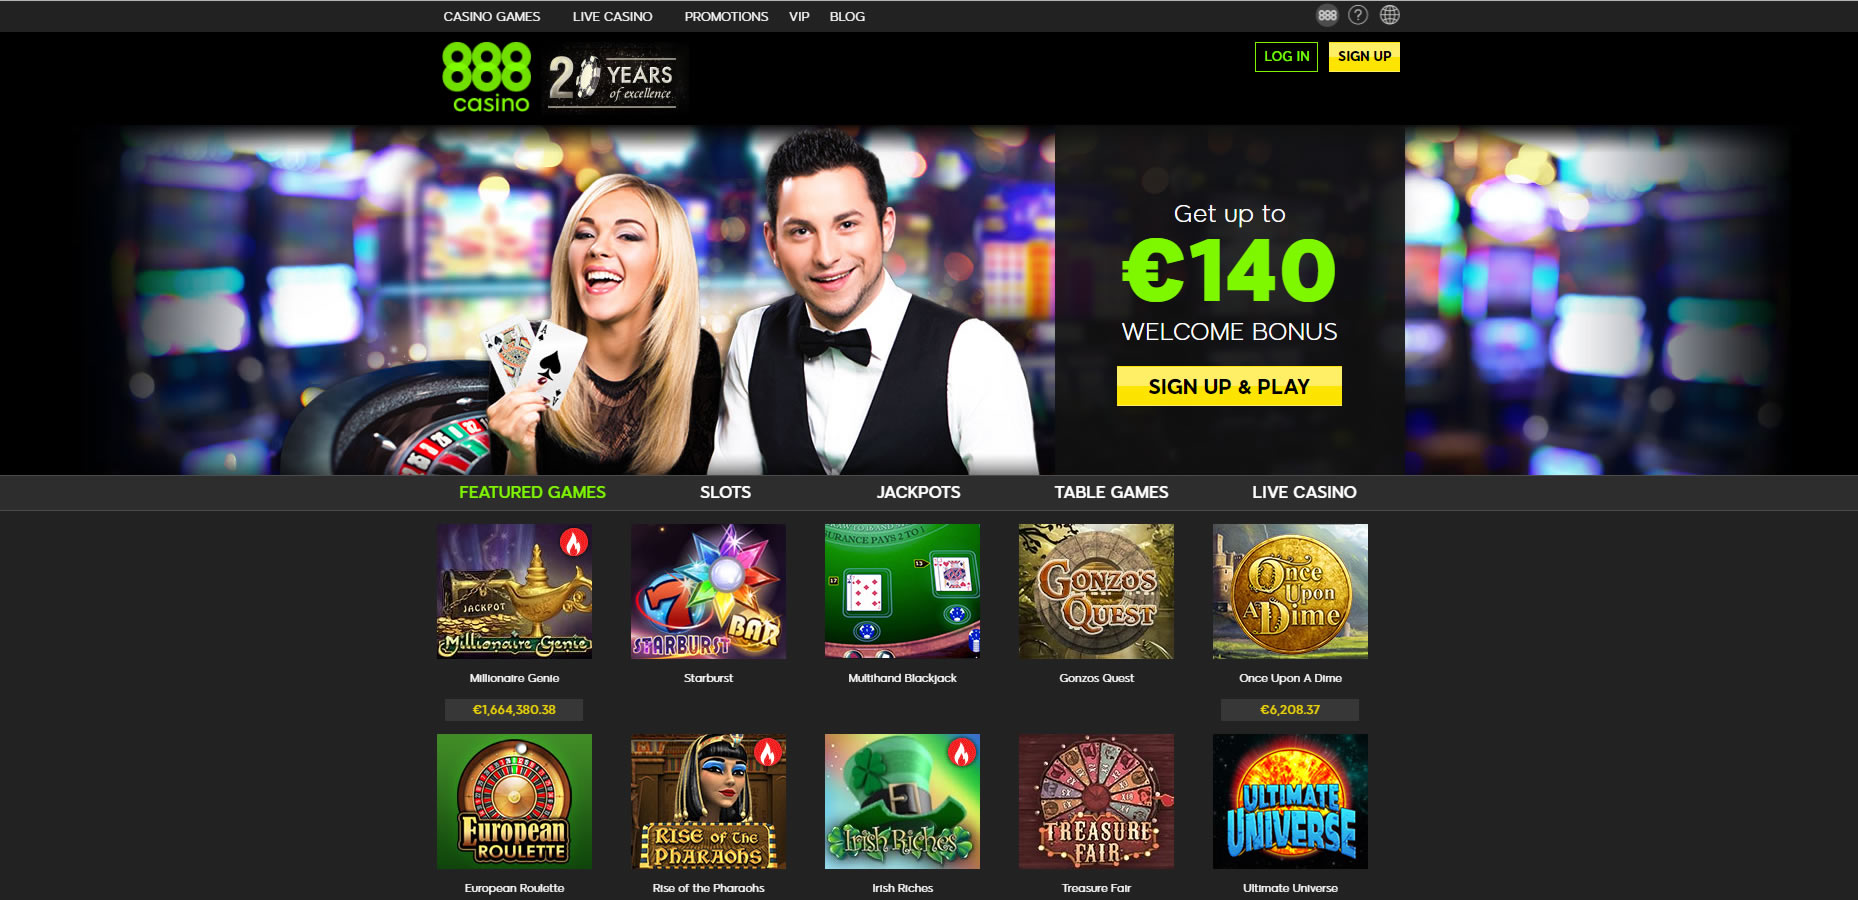 Casino on net 888 jugar gratis яндекс играть в игровые автоматы бесплатно